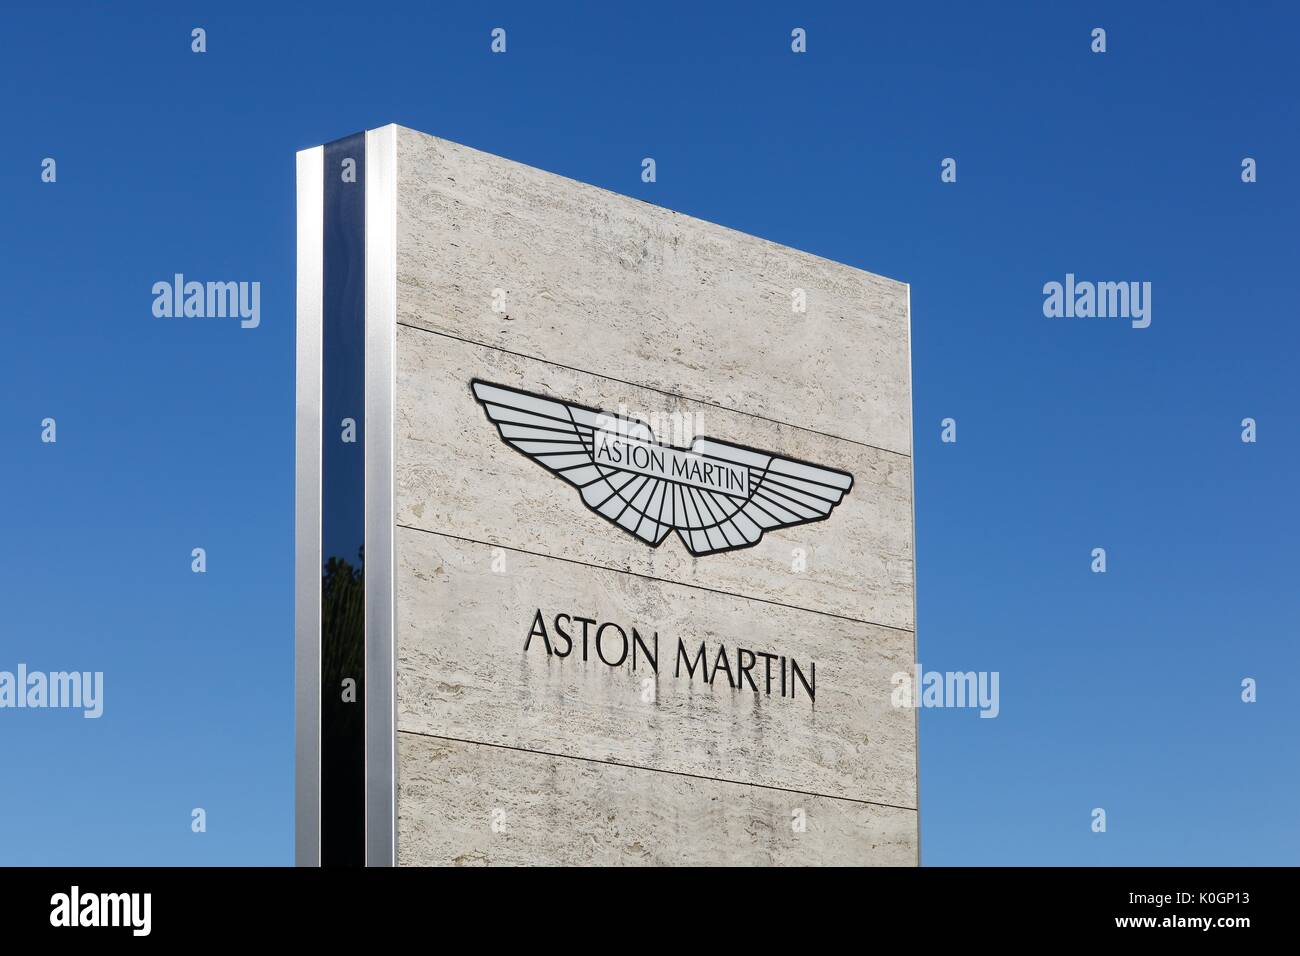 Merignac, Francia - 5 Giugno 2017: Aston Martin logo su un pannello. Aston Martin è un produttore britannico di vetture sportive di lusso e grand tourer Foto Stock